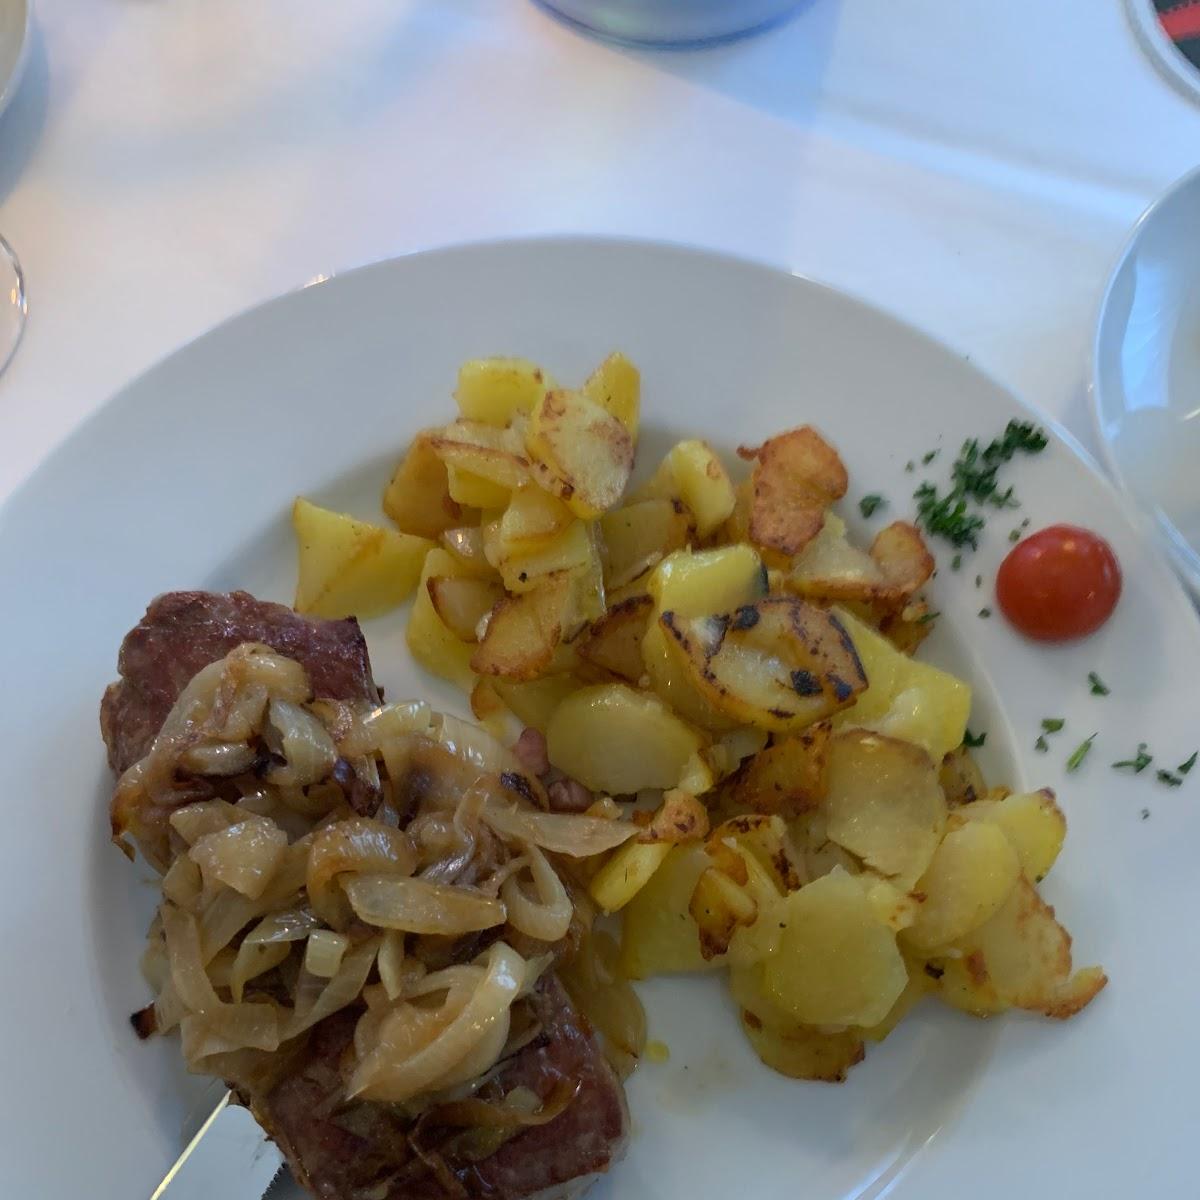 Restaurant "RESTAURANT ADEBAR | Kroatische und internationale Spezialitäten" in Eppertshausen